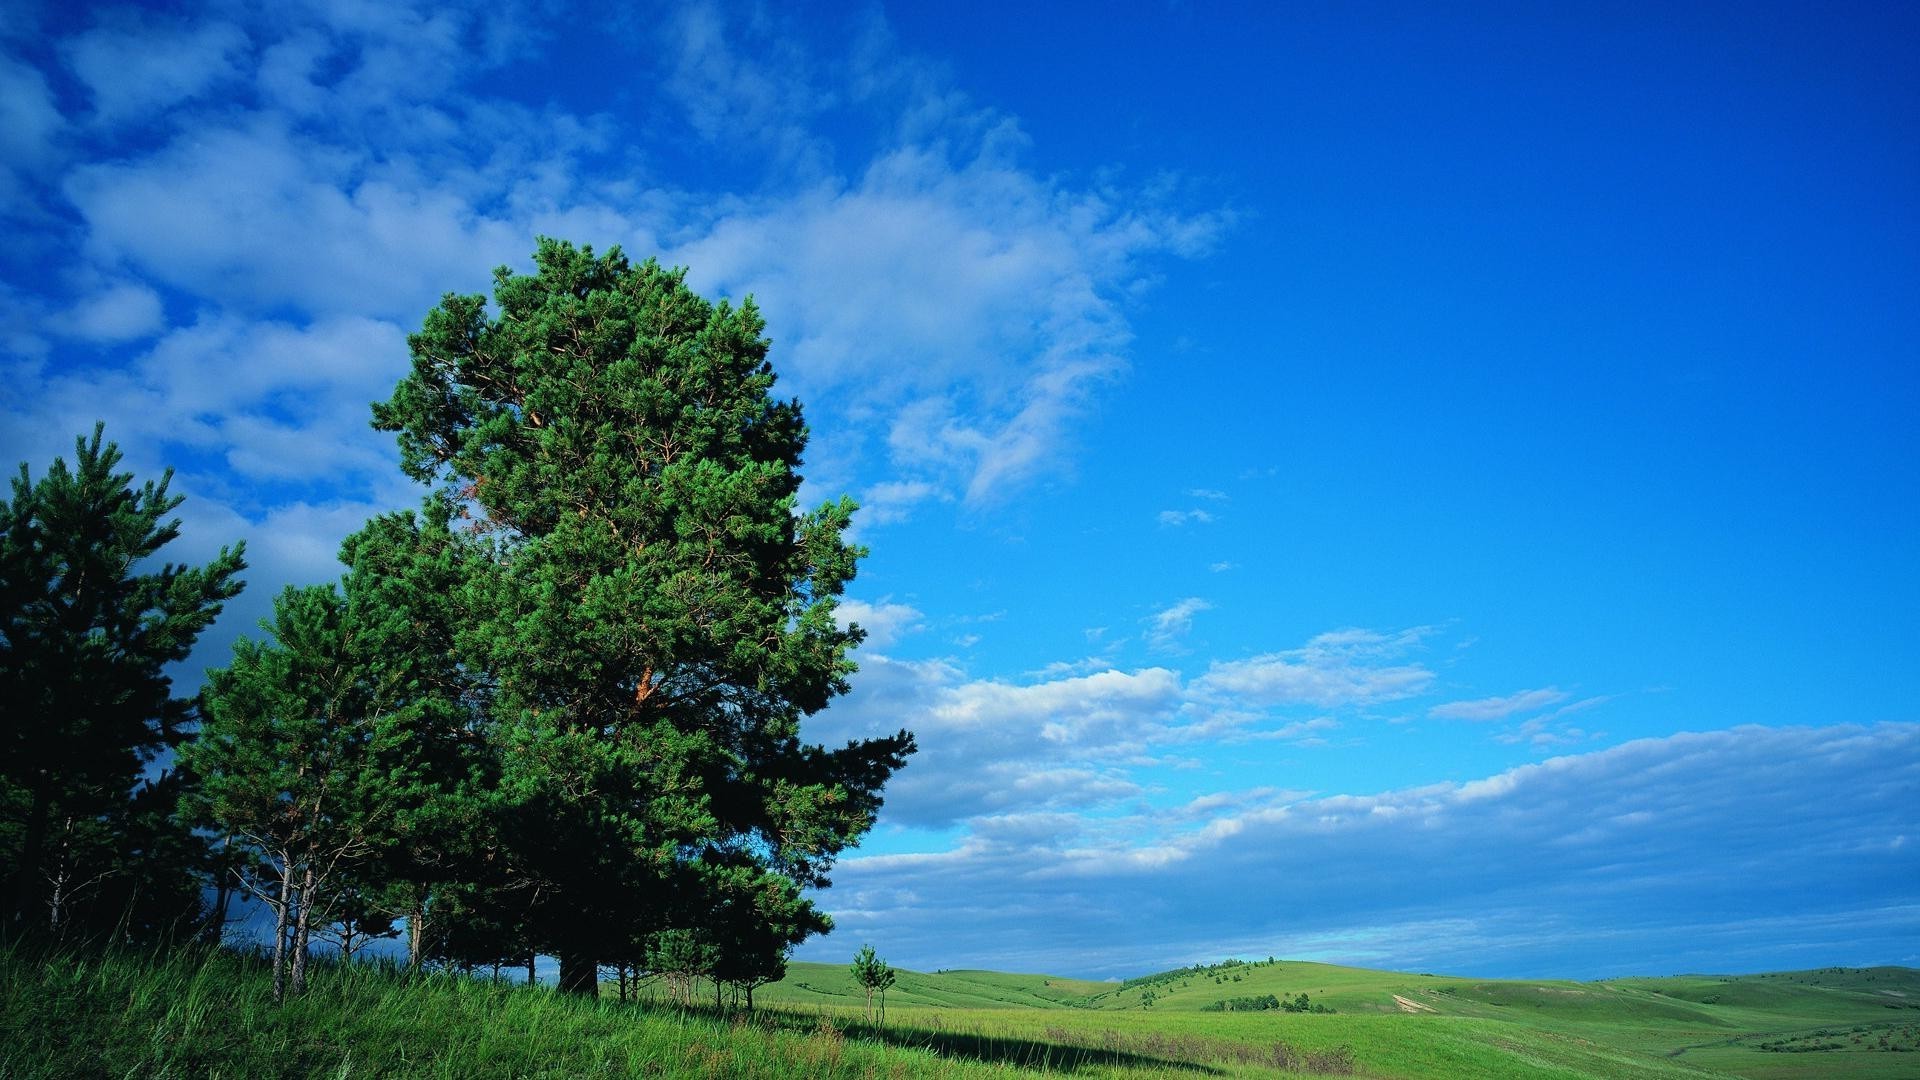 лето природа пейзаж небо дерево на открытом воздухе трава сельской местности хорошую погоду сельских древесины солнце